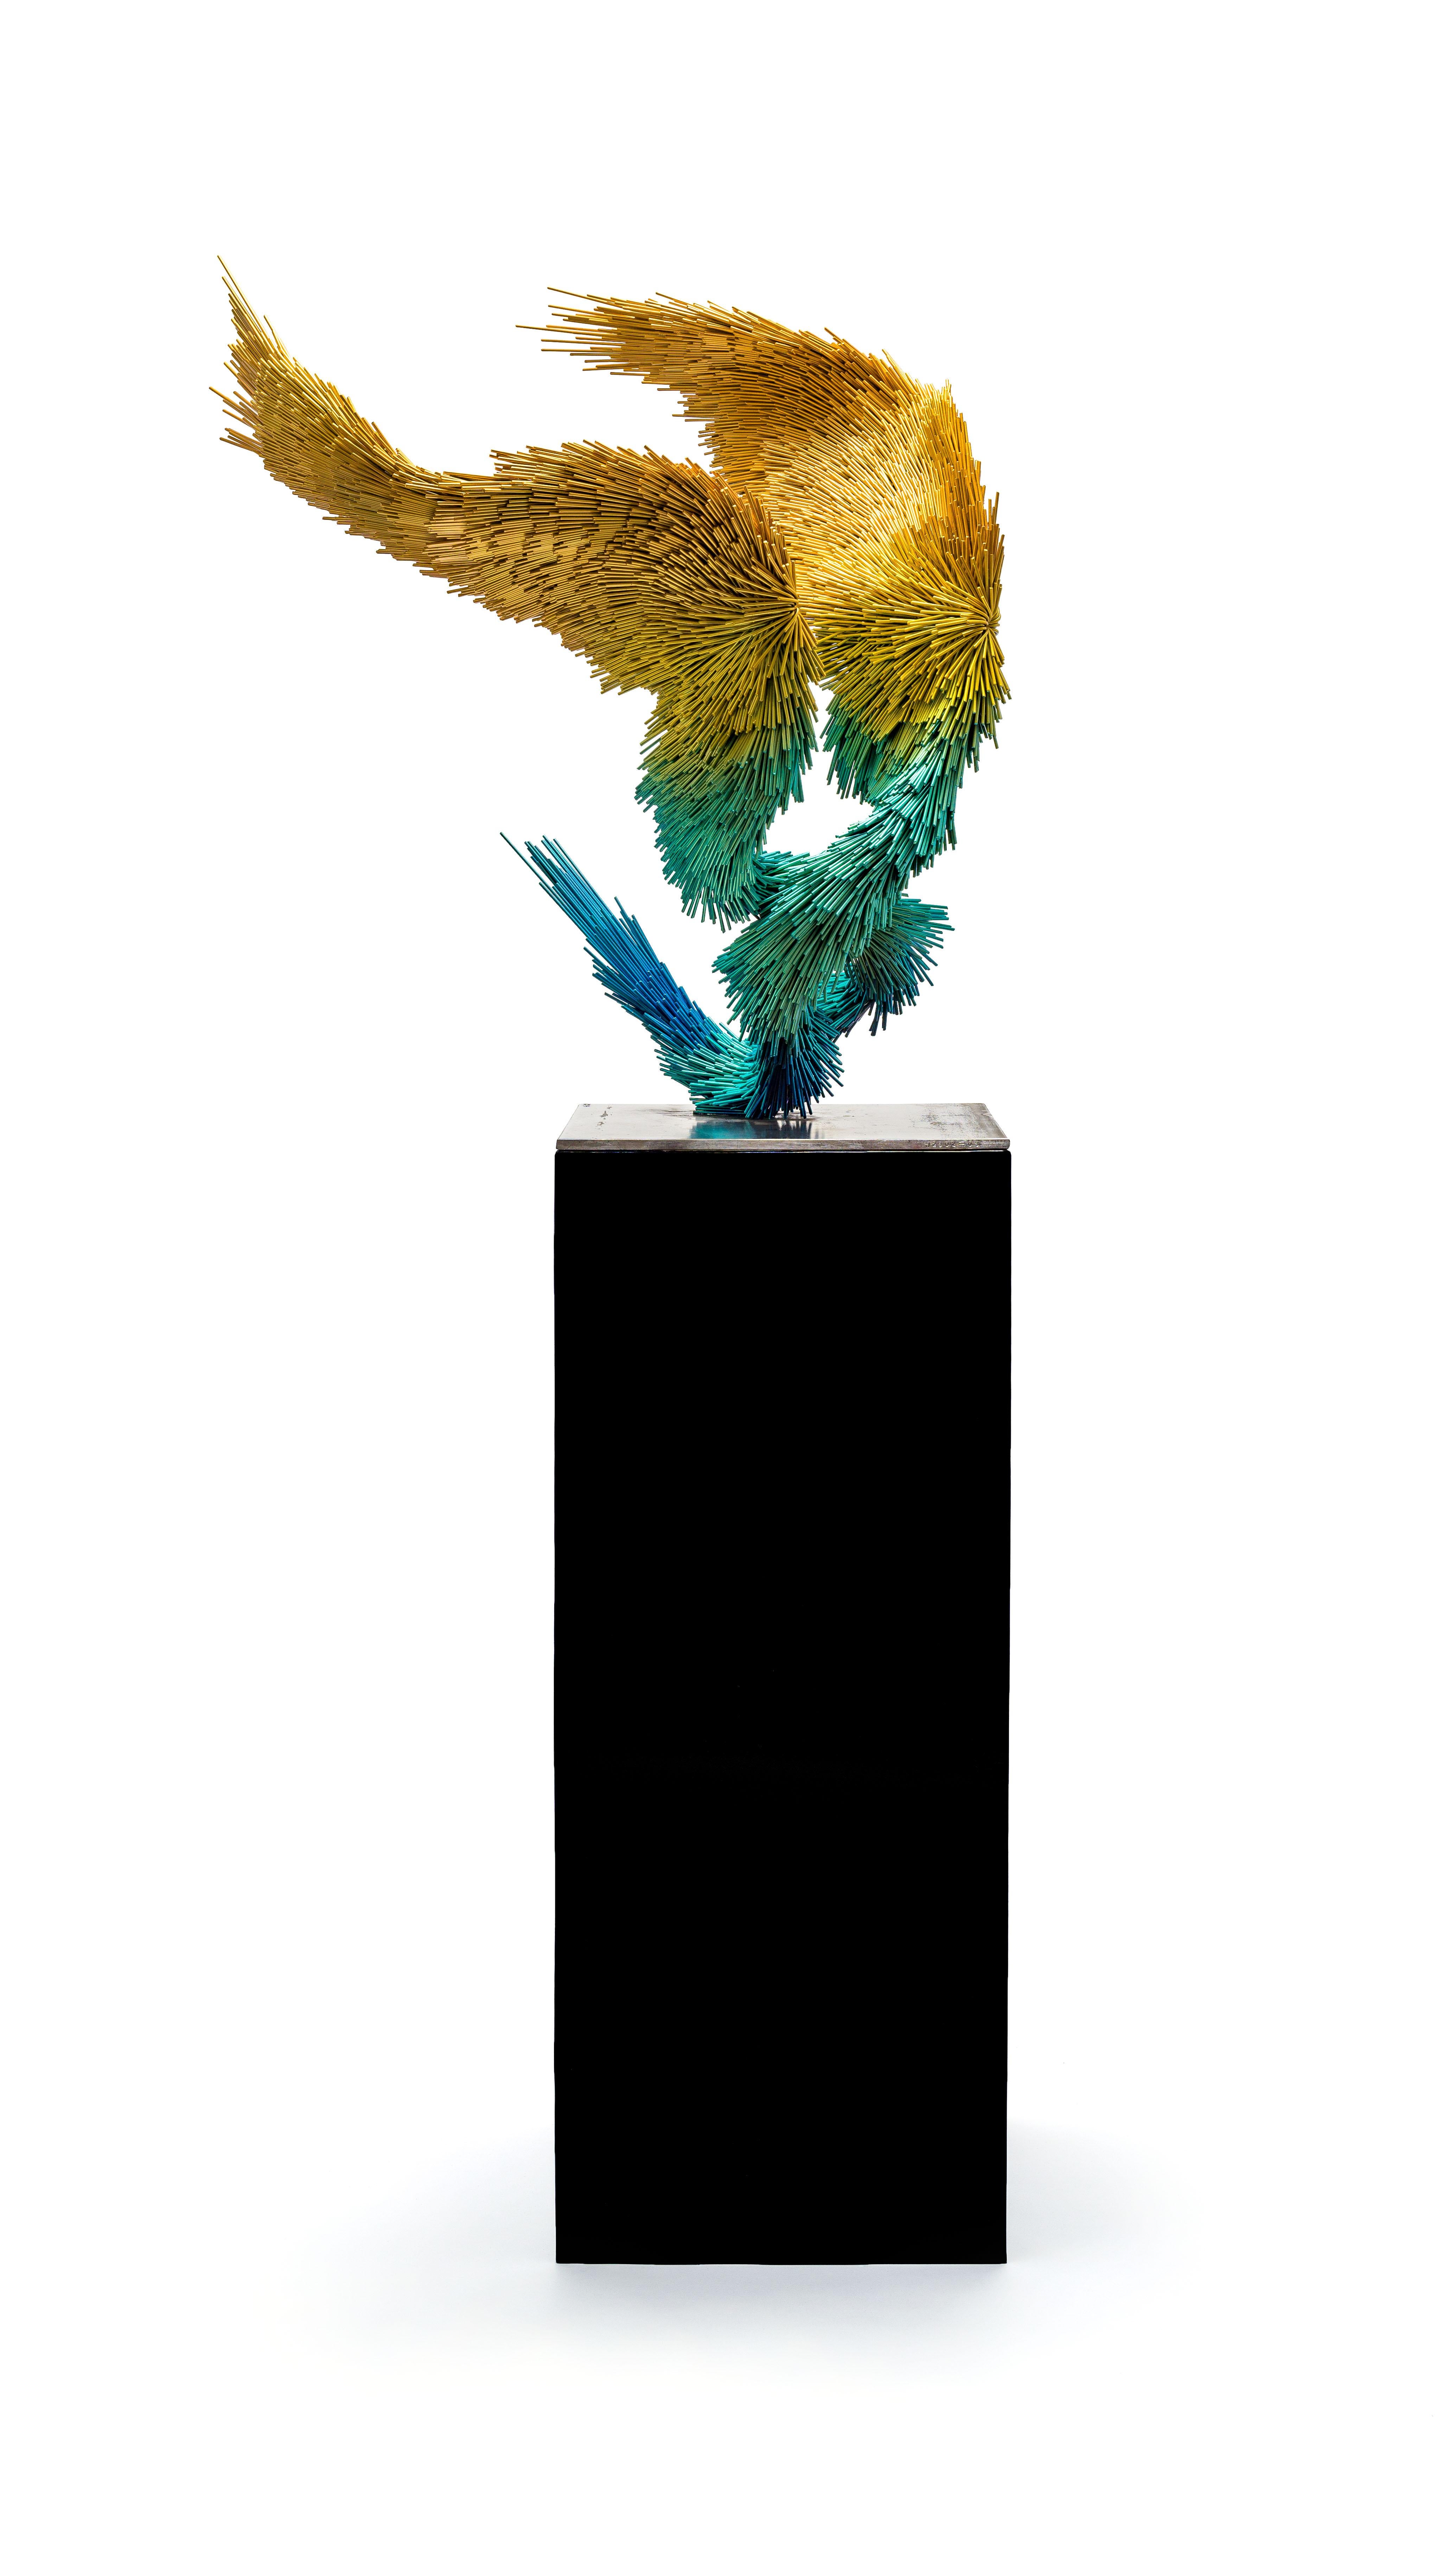 Fleeting Murmur, zeitgenössische Vogelskulptur aus Stahl in Gelb, Grün und Blau (Zeitgenössisch), Sculpture, von Jake Michael Singer